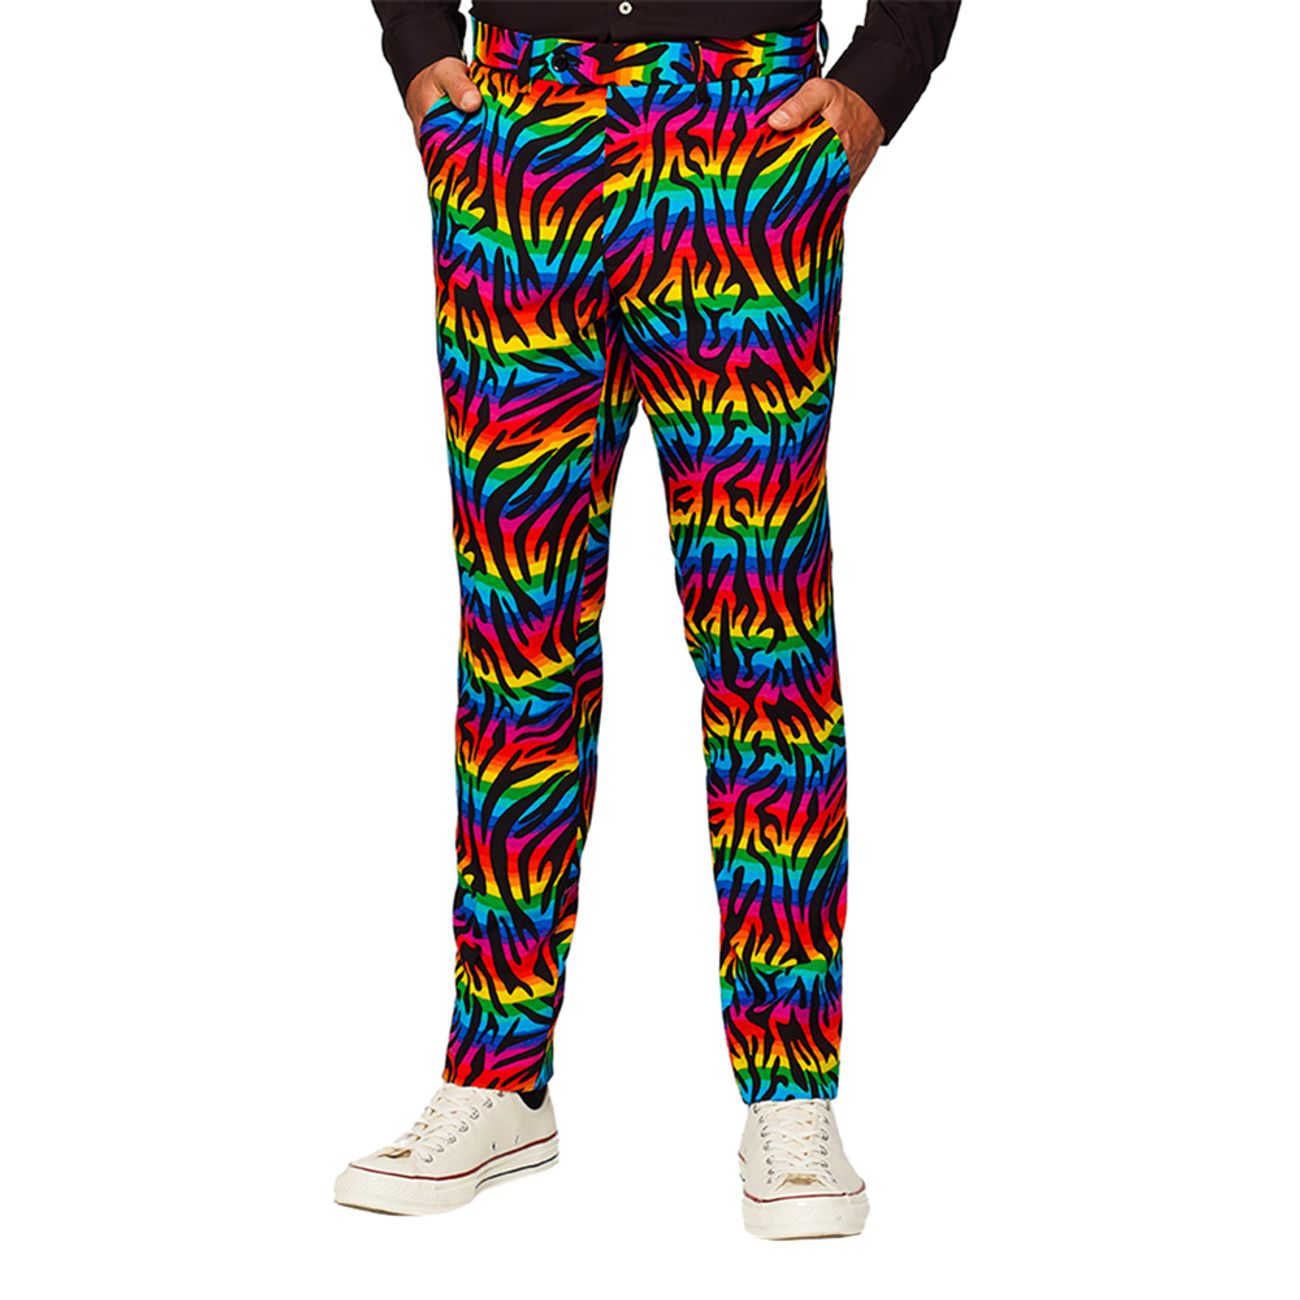 opposuits-wild-rainbow-kostym-74597-10